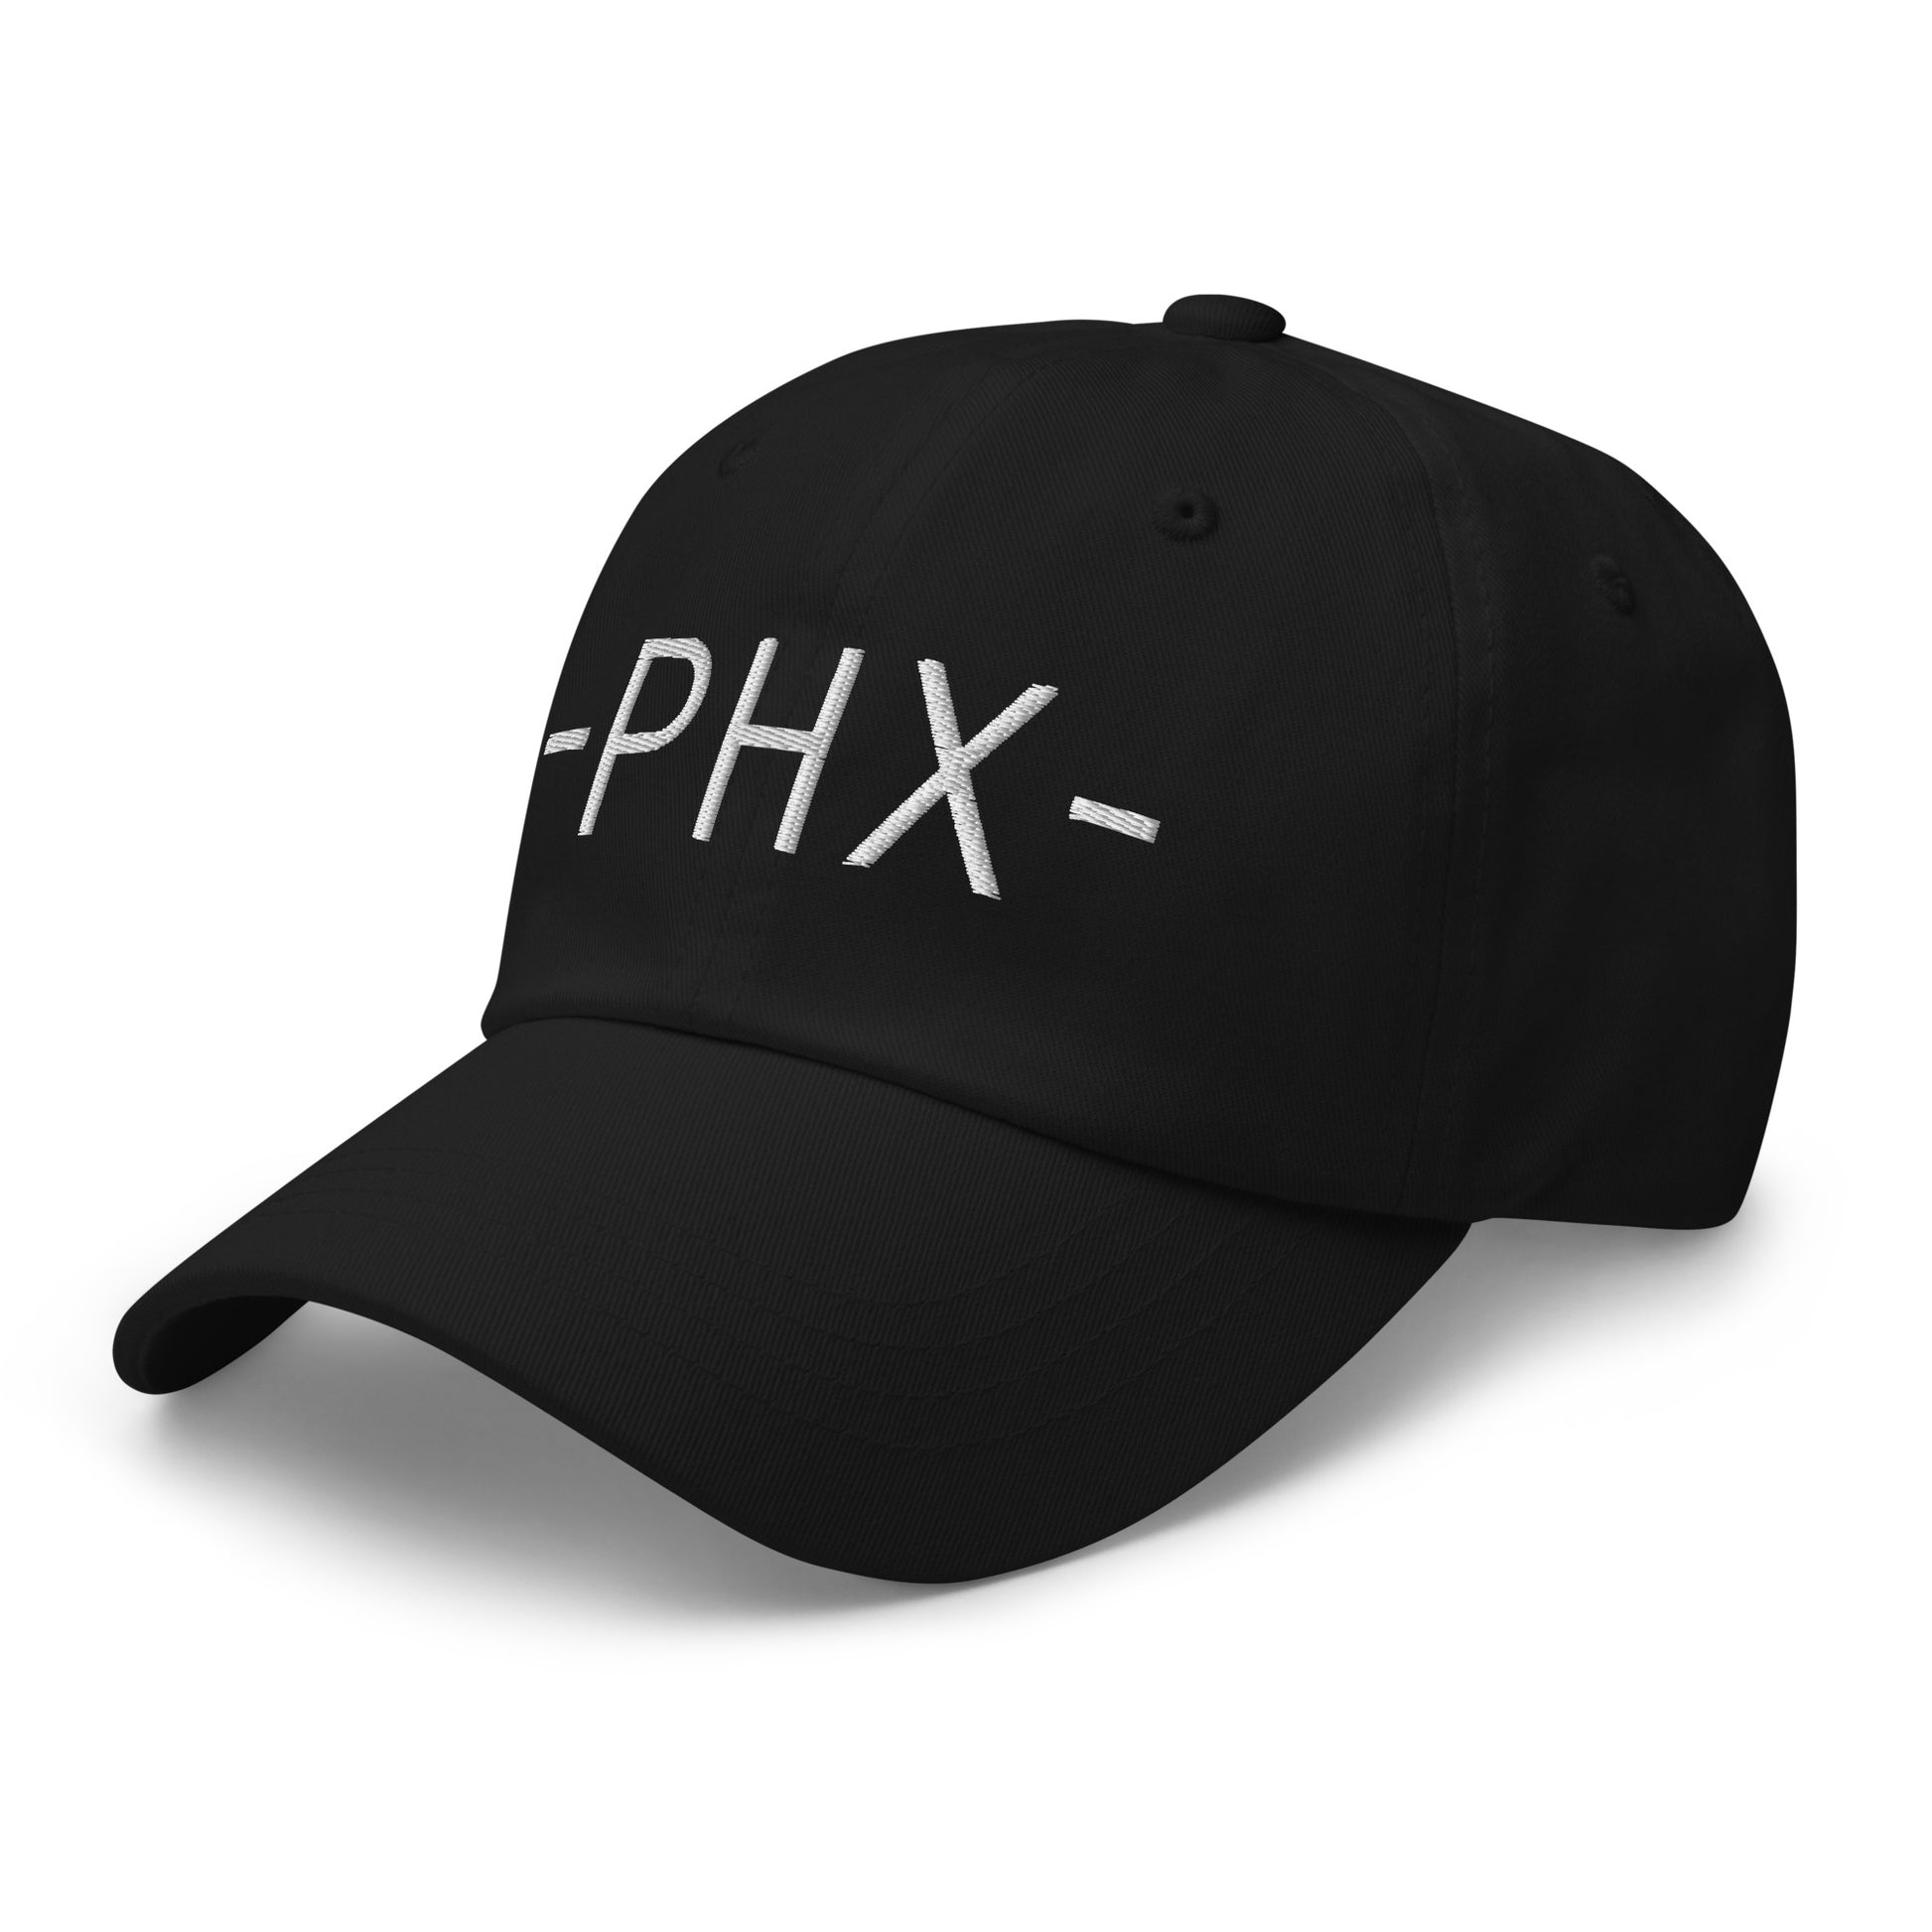 Souvenir Baseball Cap - White • PHX Phoenix • YHM Designs - Image 13